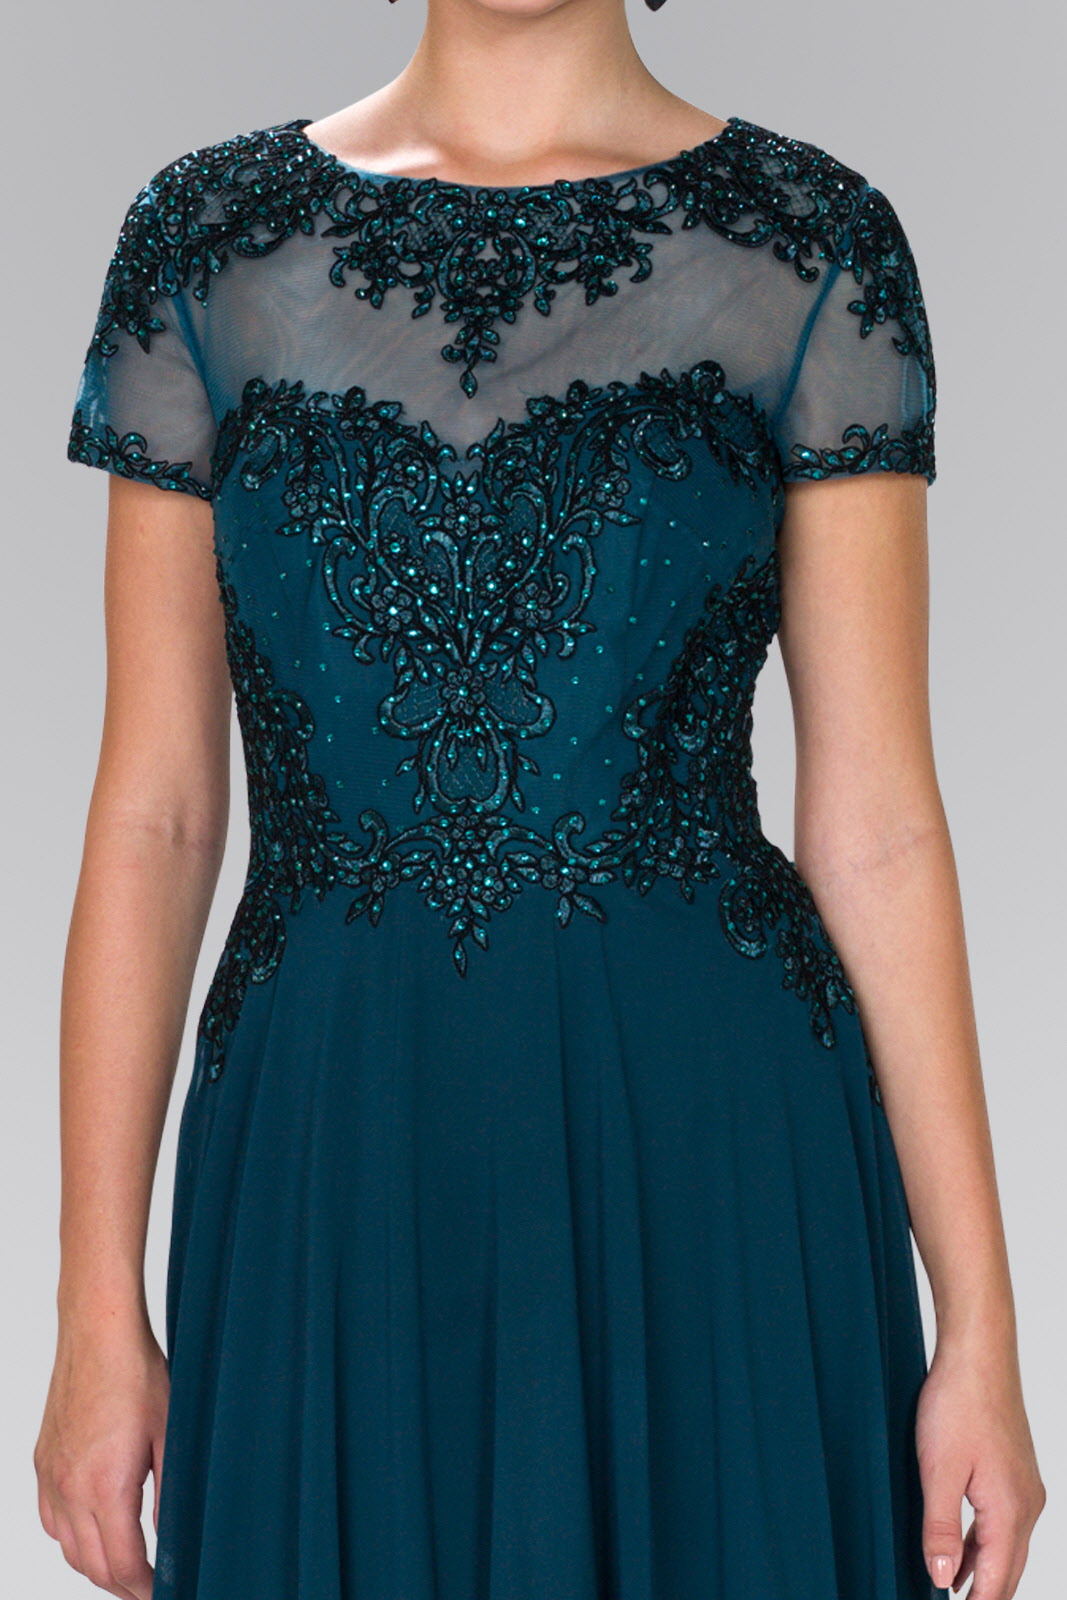 Long Short Sleeve Evening Formal Dress - The Dress Outlet Elizabeth K Teal